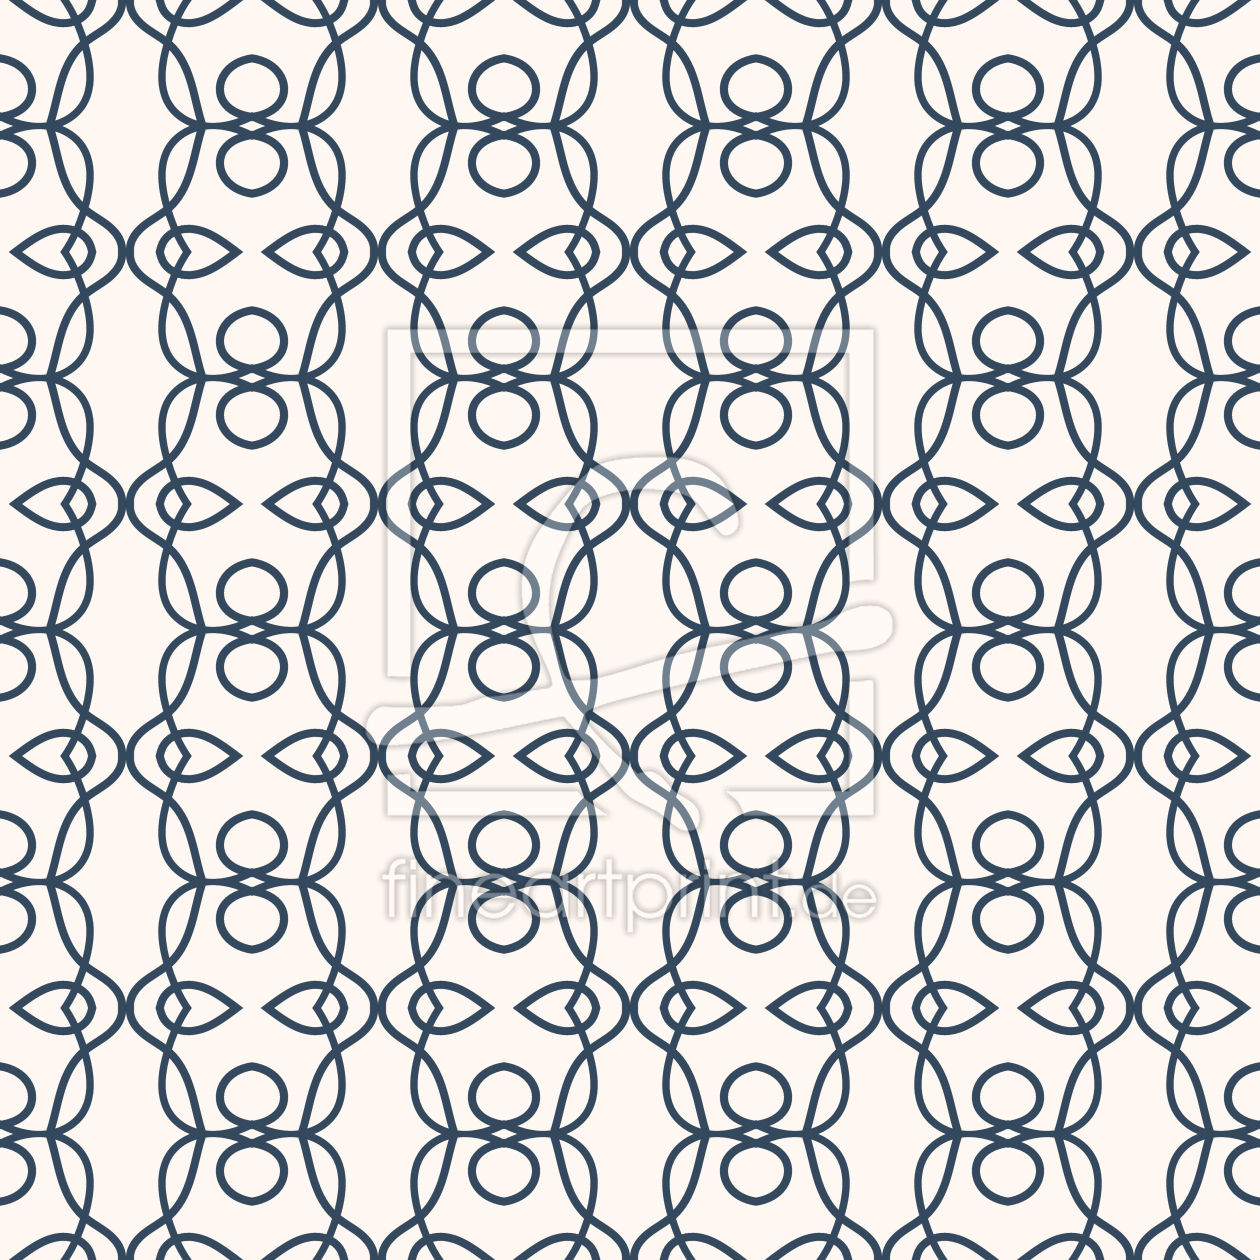 Bild-Nr.: 9013658 Schnörkel Bordüren erstellt von patterndesigns-com